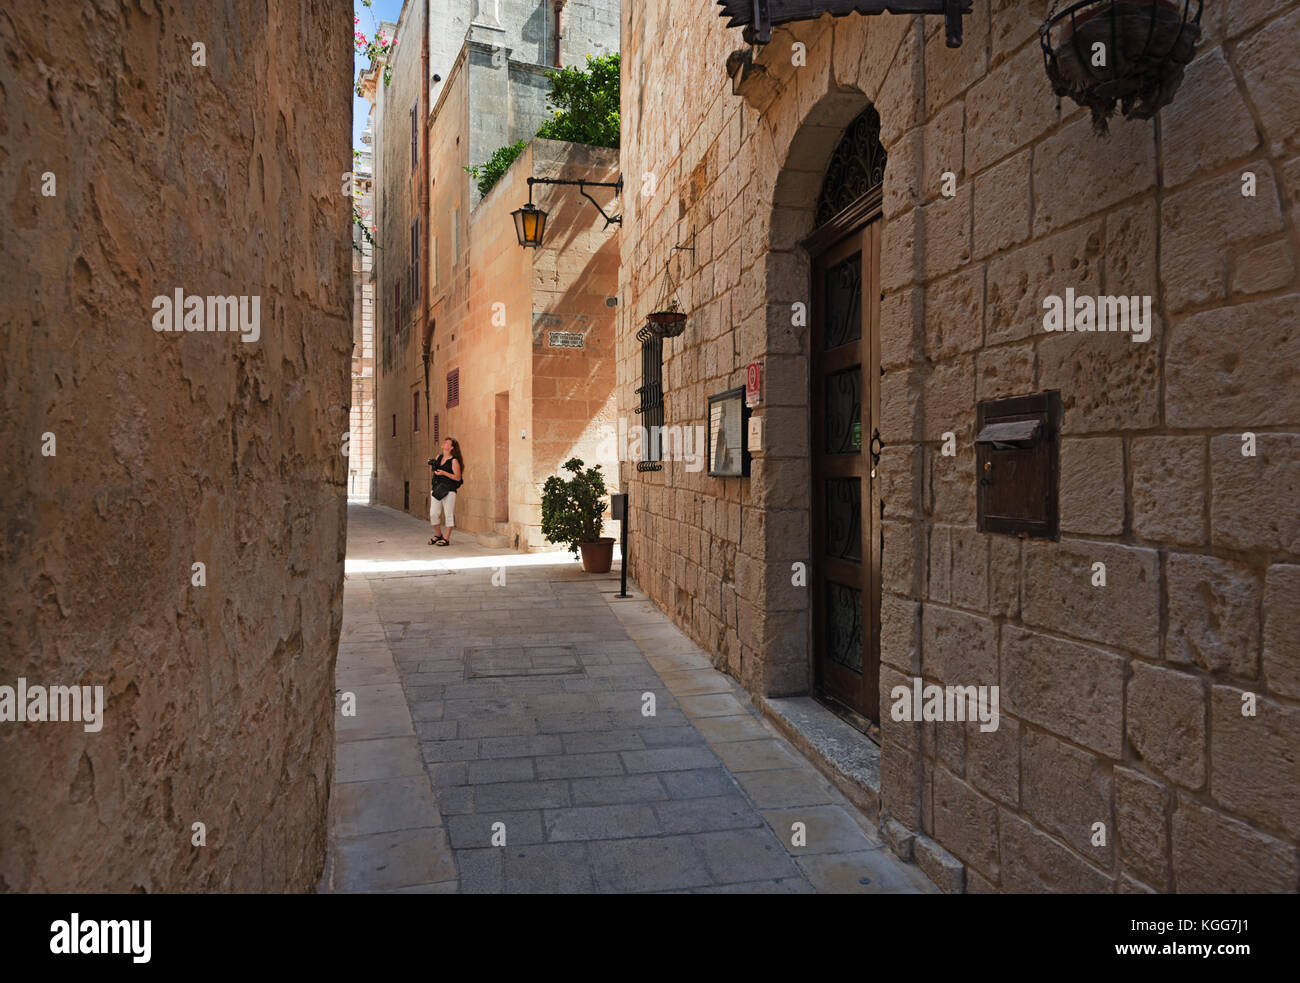 Inessa on a street in Mdina (Malta) Stock Photo